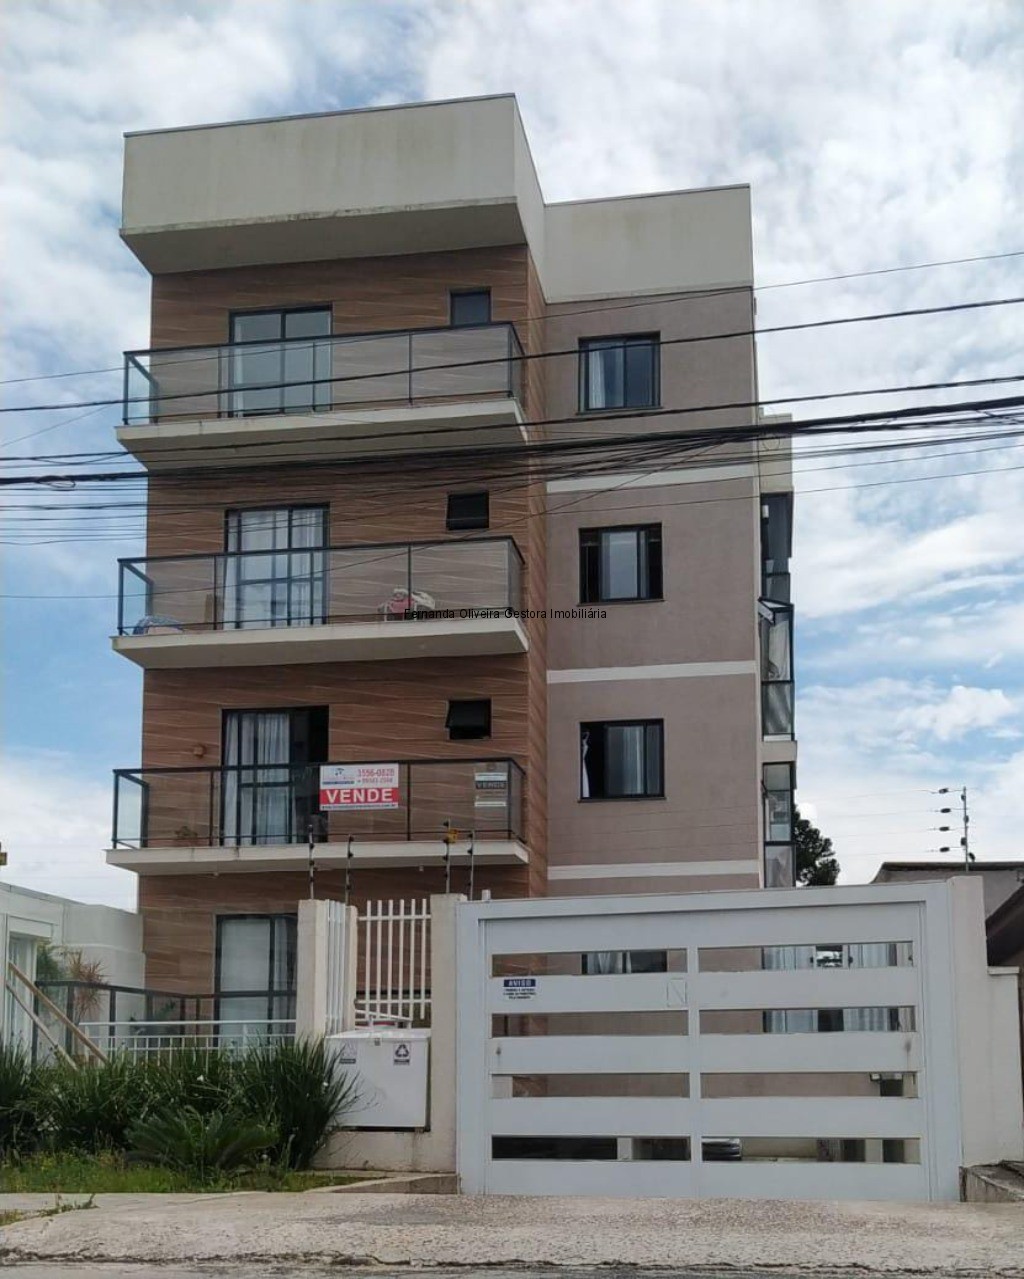 Apartamentos de 77 a 129m² com 3 Quartos, Suíte, planta flexivel com 2  Vagas de Garagem no São Pedro, São José dos Pinhais, PR - Bravo  Investimentos Imobiliários